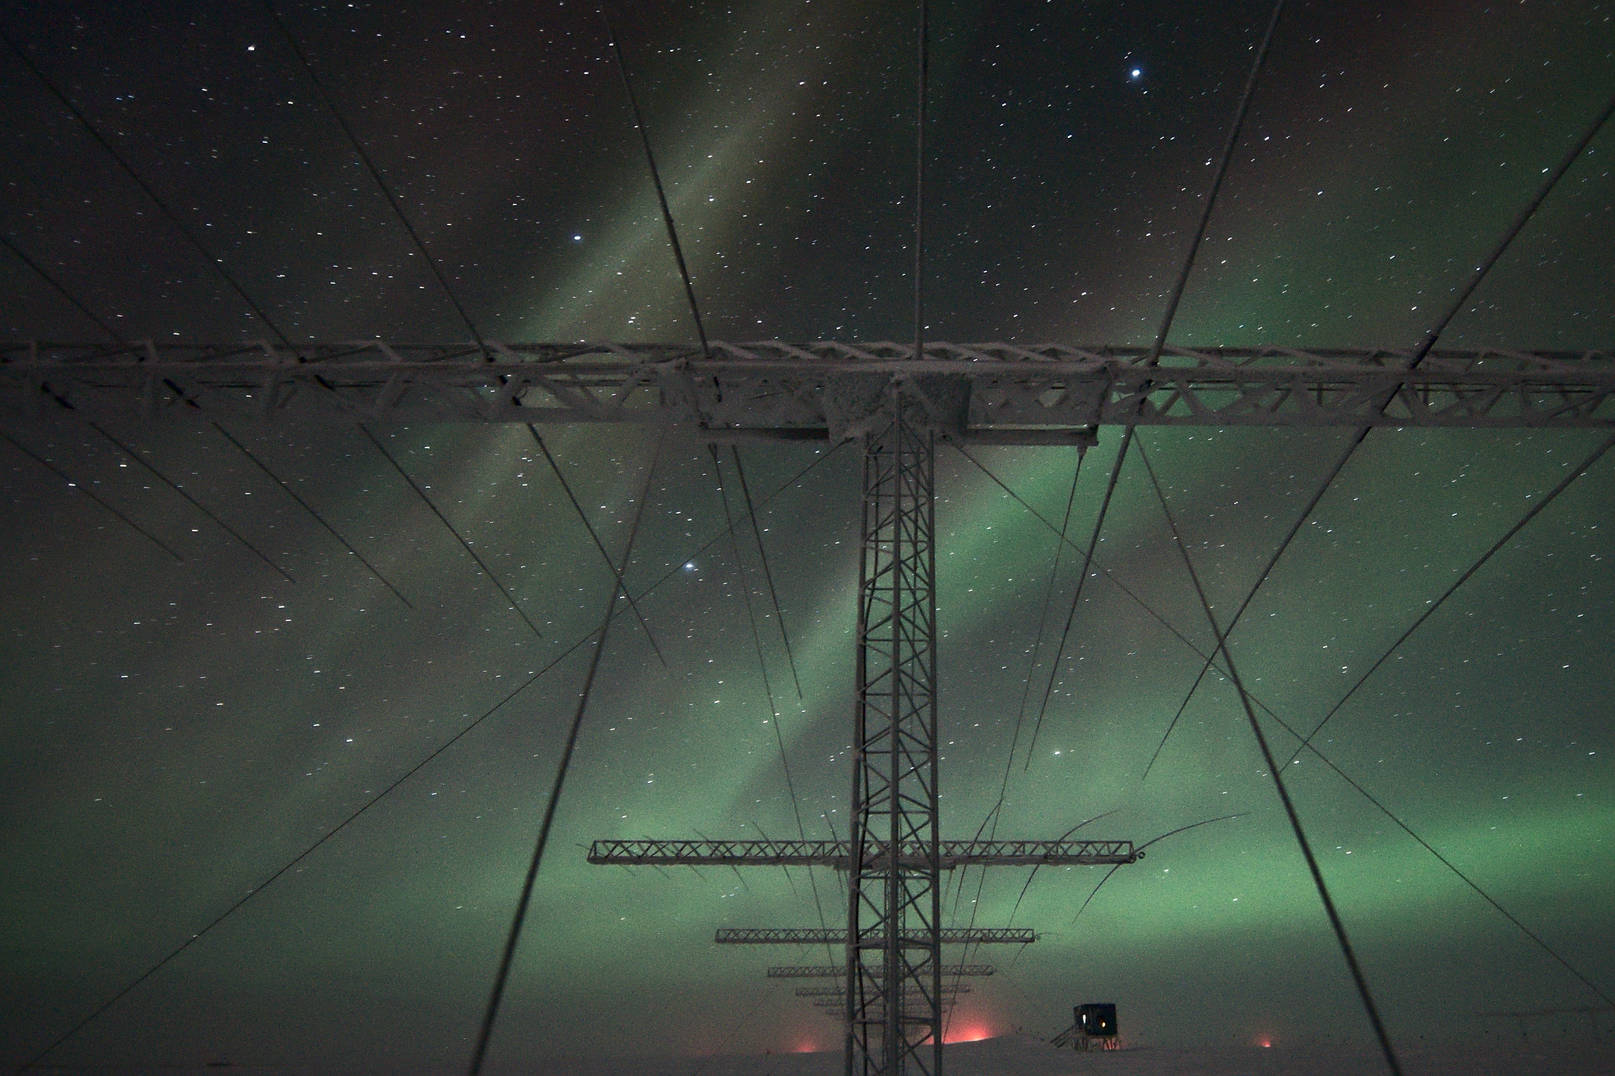 SuperDARN antennae and auroras